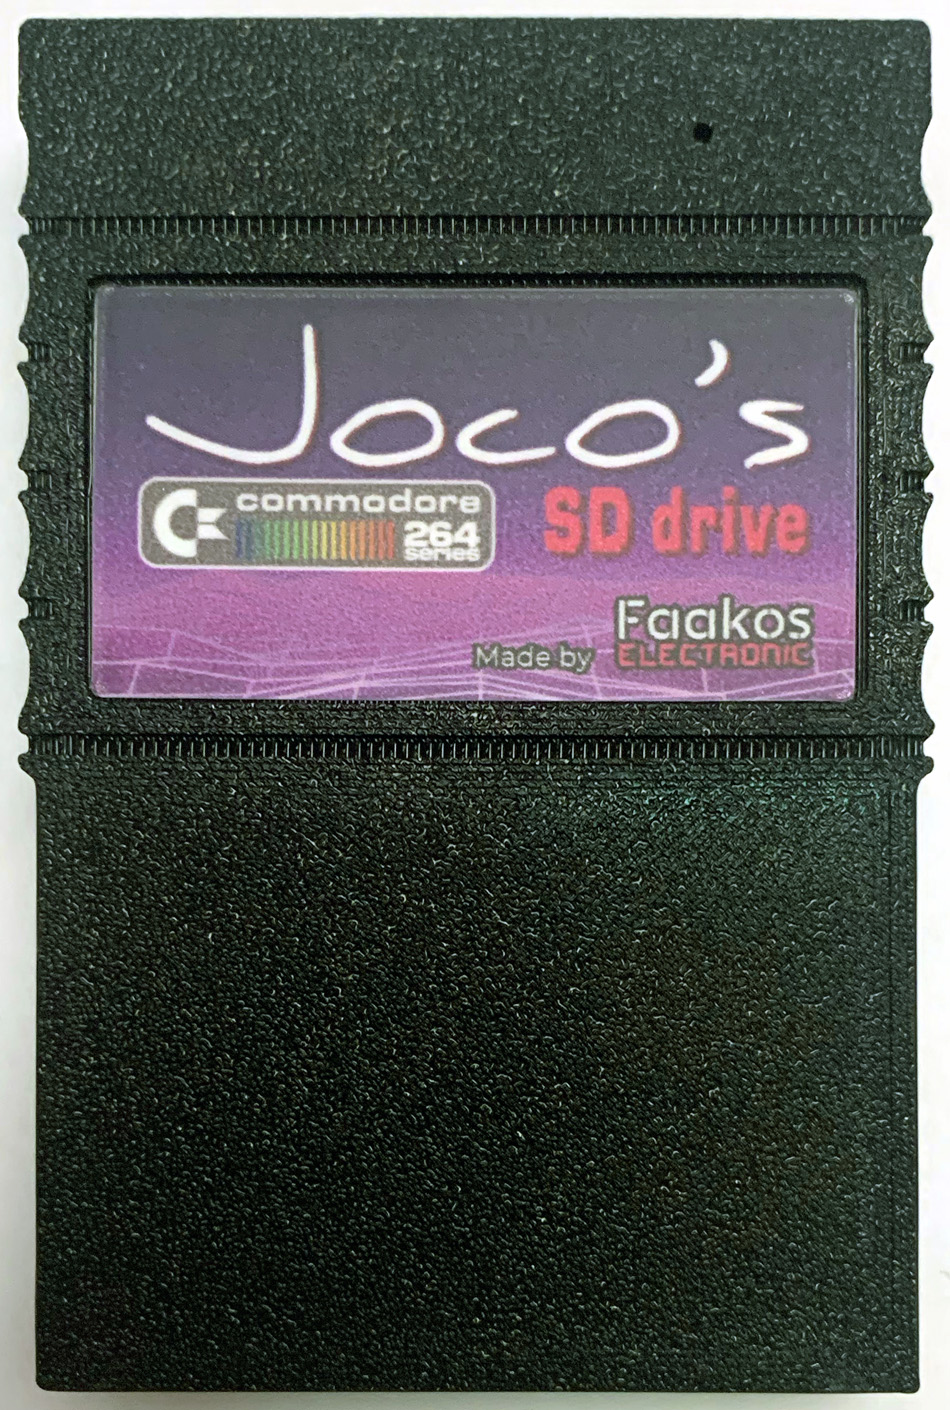 Joco's C264 SD Drive